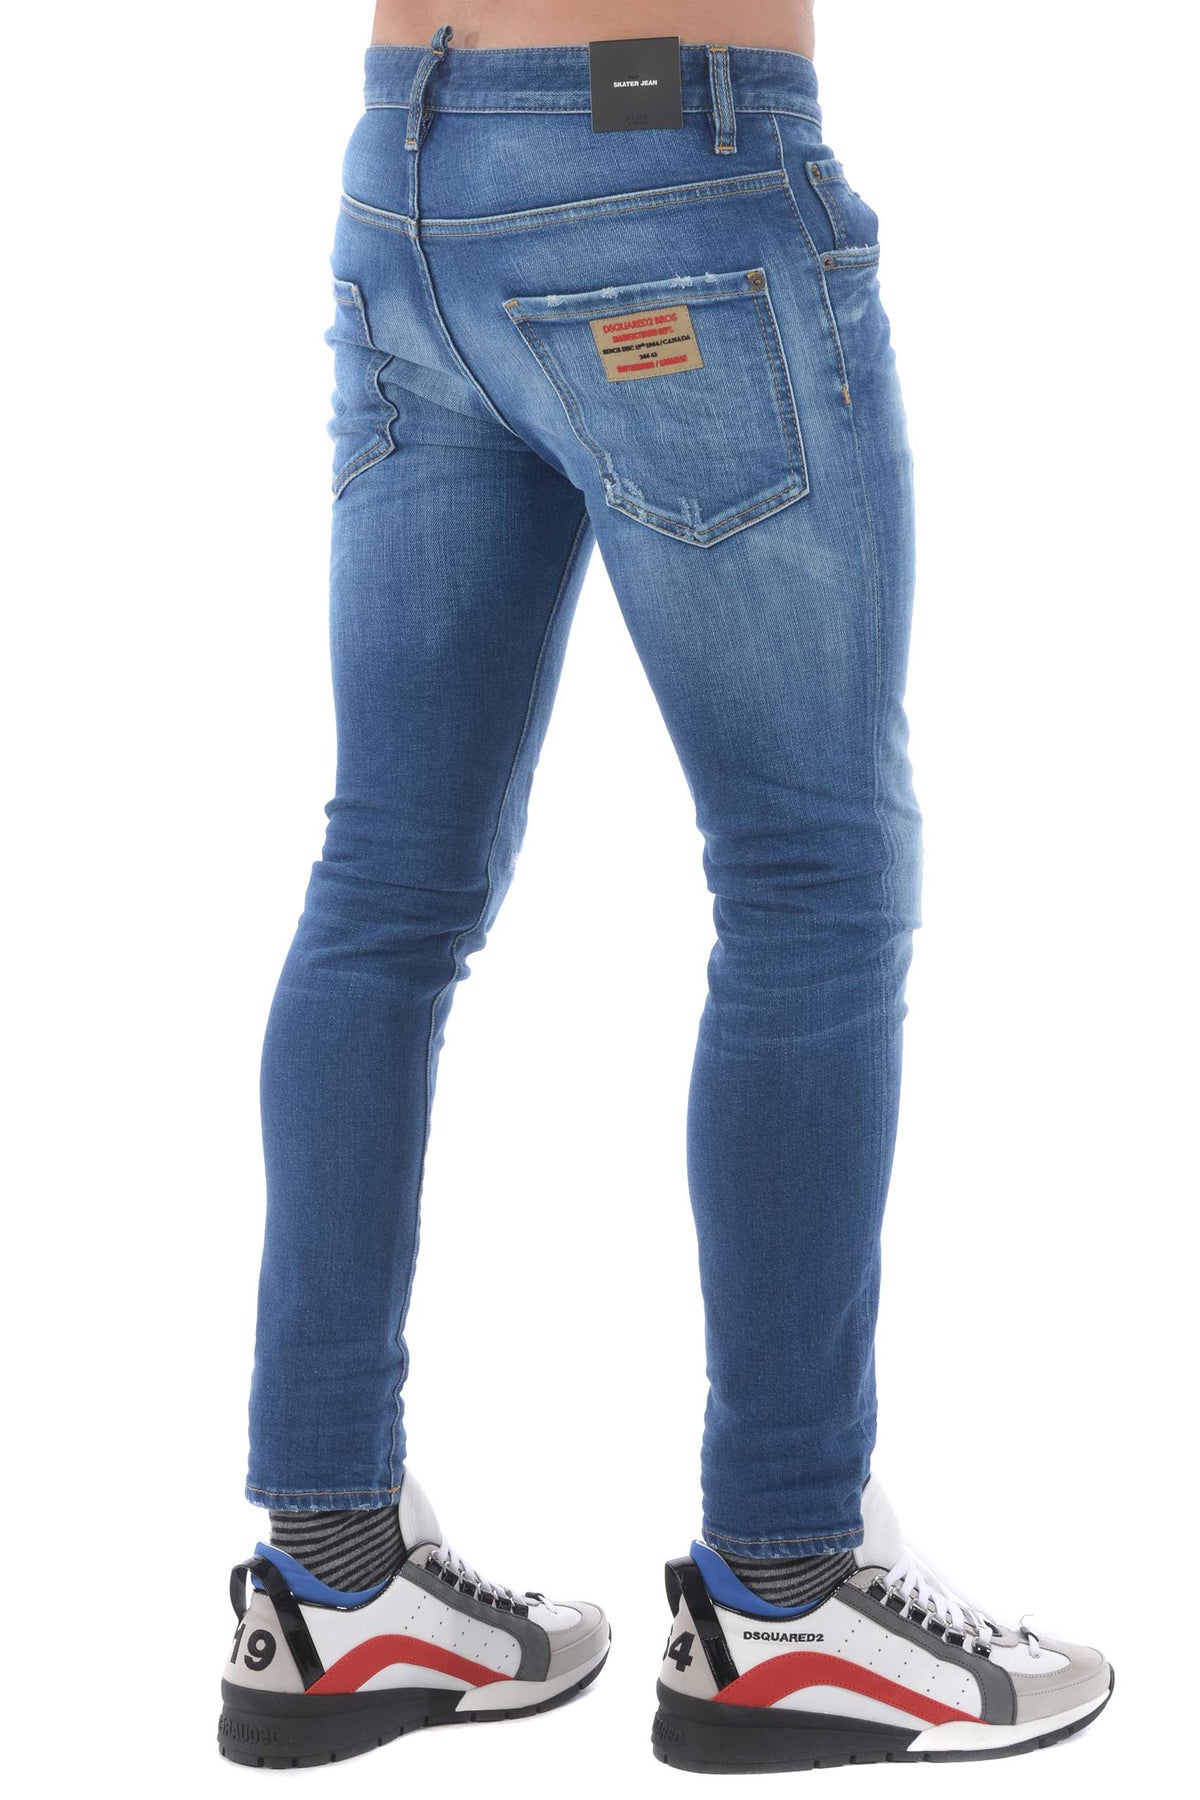 Dsquared2 Skater jeans